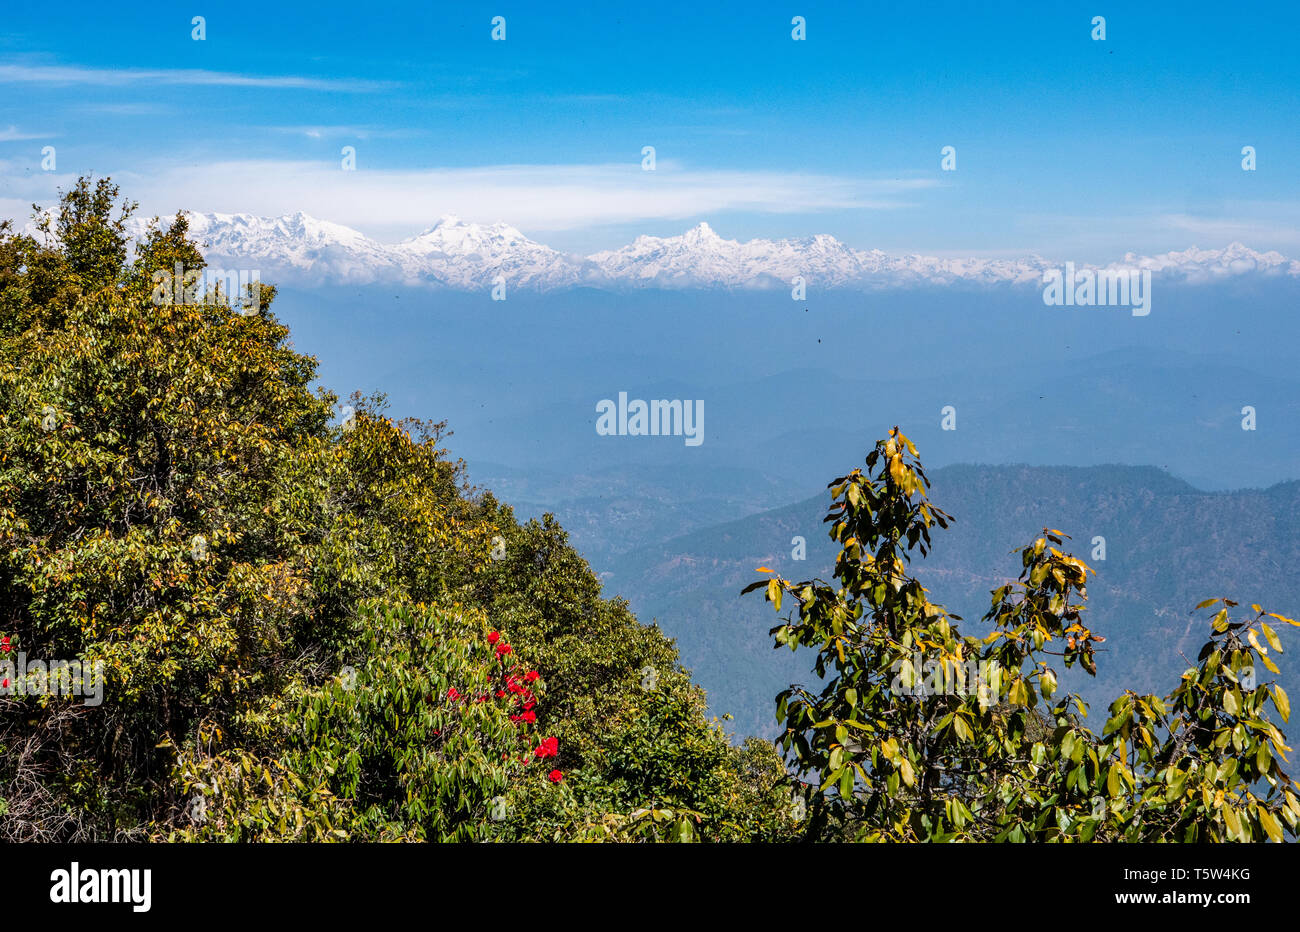 Vue éloignée sur les sommets enneigés de l'Himalaya Indien autour de Nanda Devi 'Point zéro' dans la région de Binsar Uttarakhand en Inde du Nord Banque D'Images